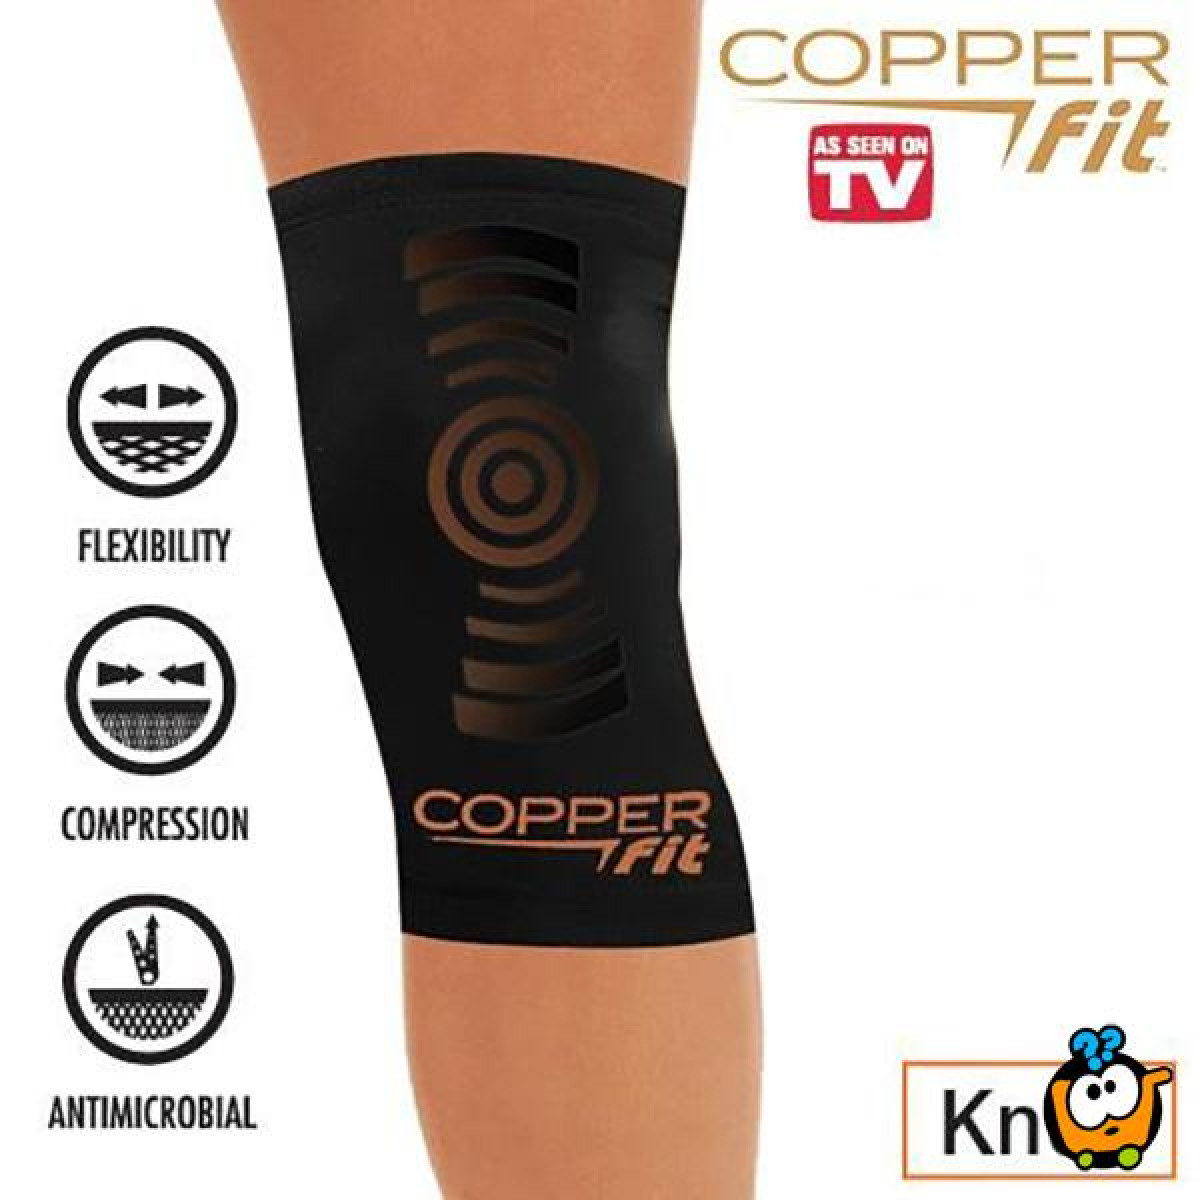 Copper Fit - Steznik za kolena i laktove | Kuda u Kupovinu